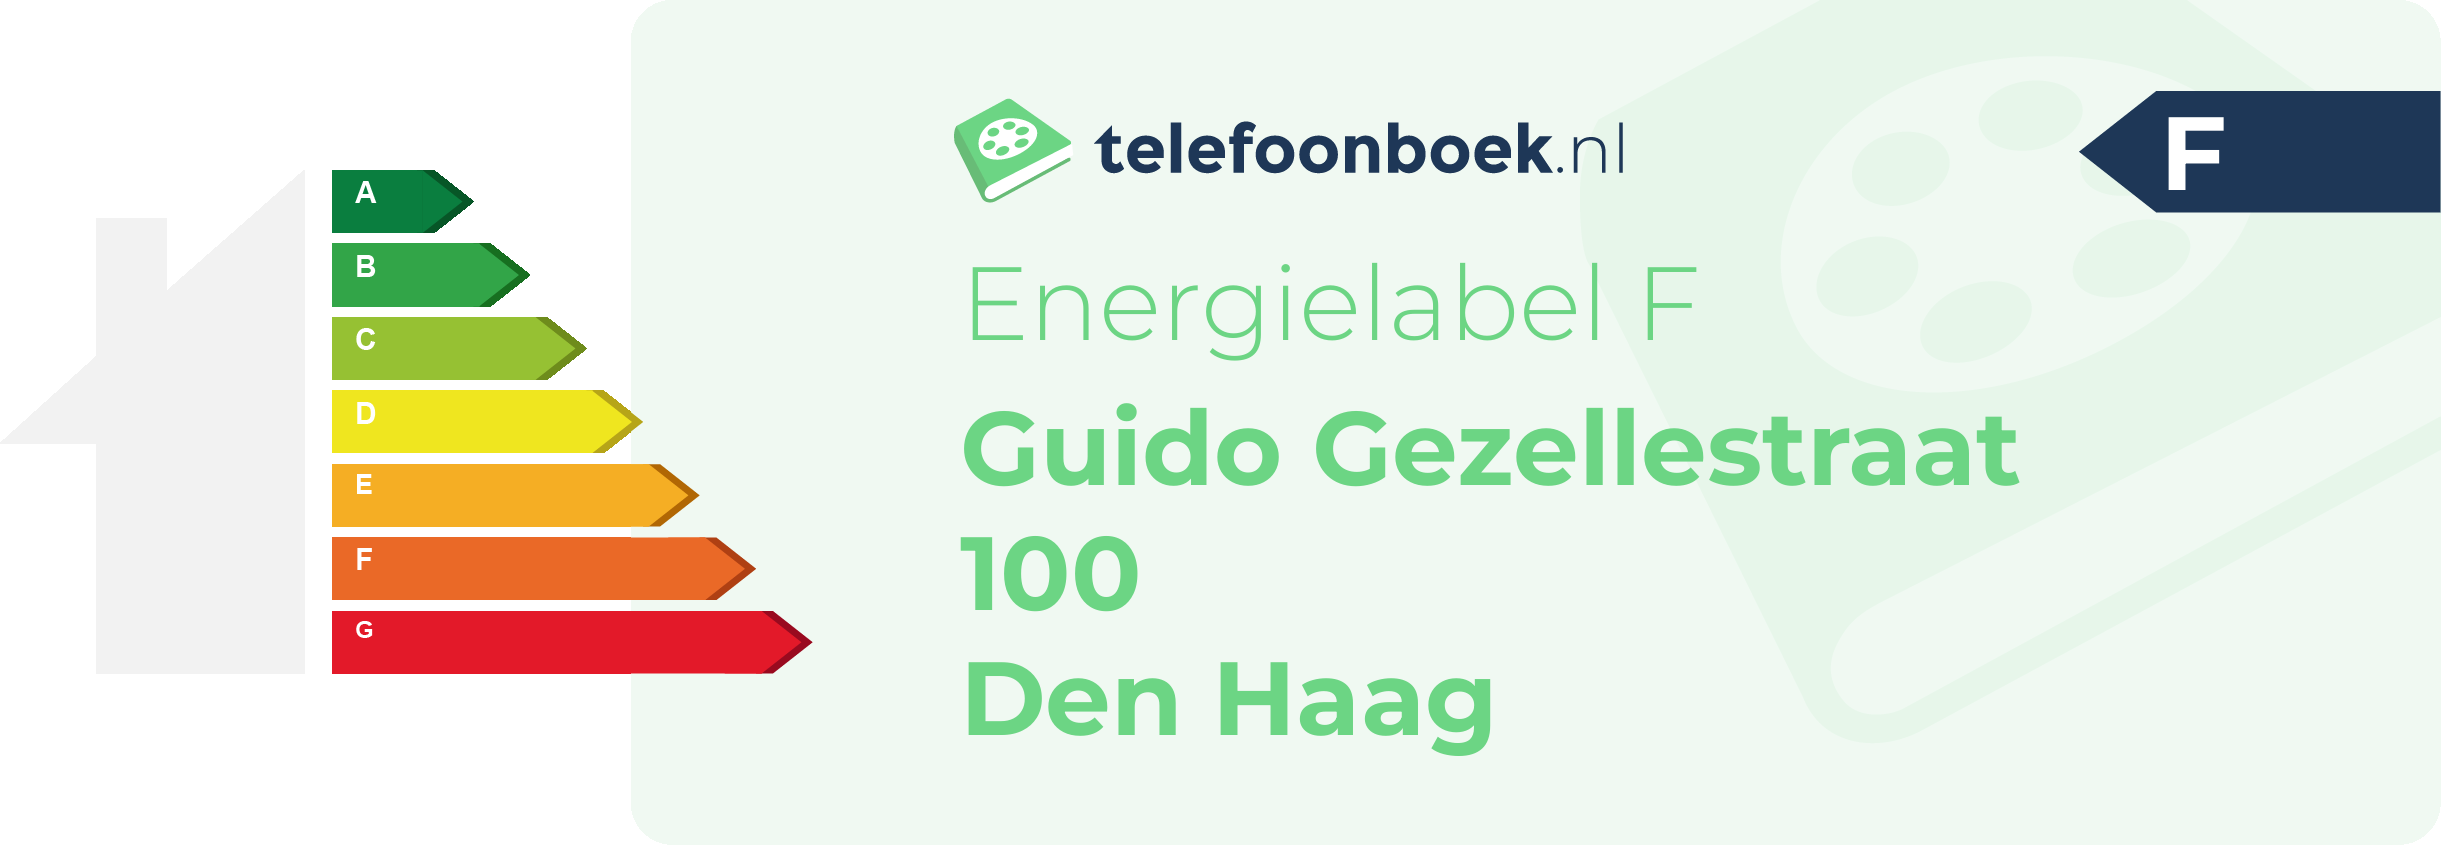 Energielabel Guido Gezellestraat 100 Den Haag